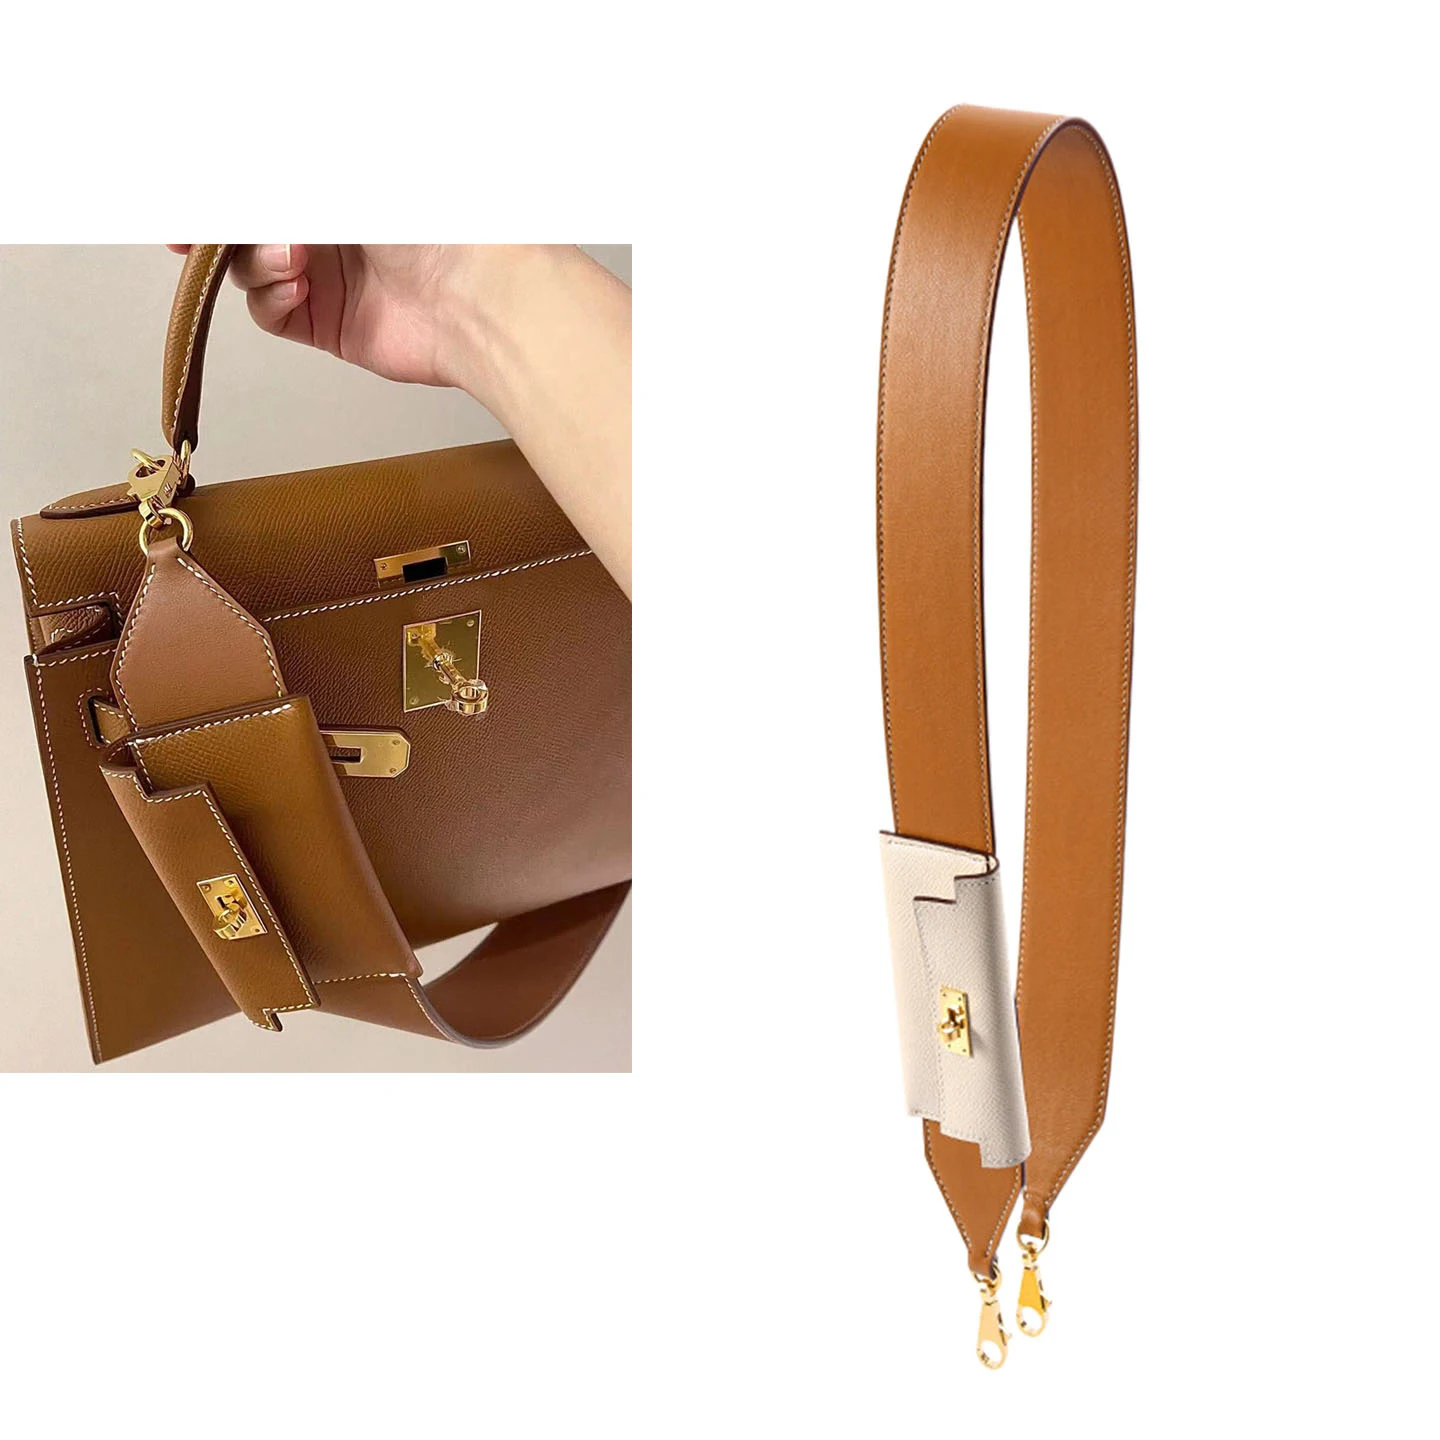 Kelly Pocket Bag Strap  50mm  Wide Leather Shoulder Straps Hand-stitched Pure Steel Buckle